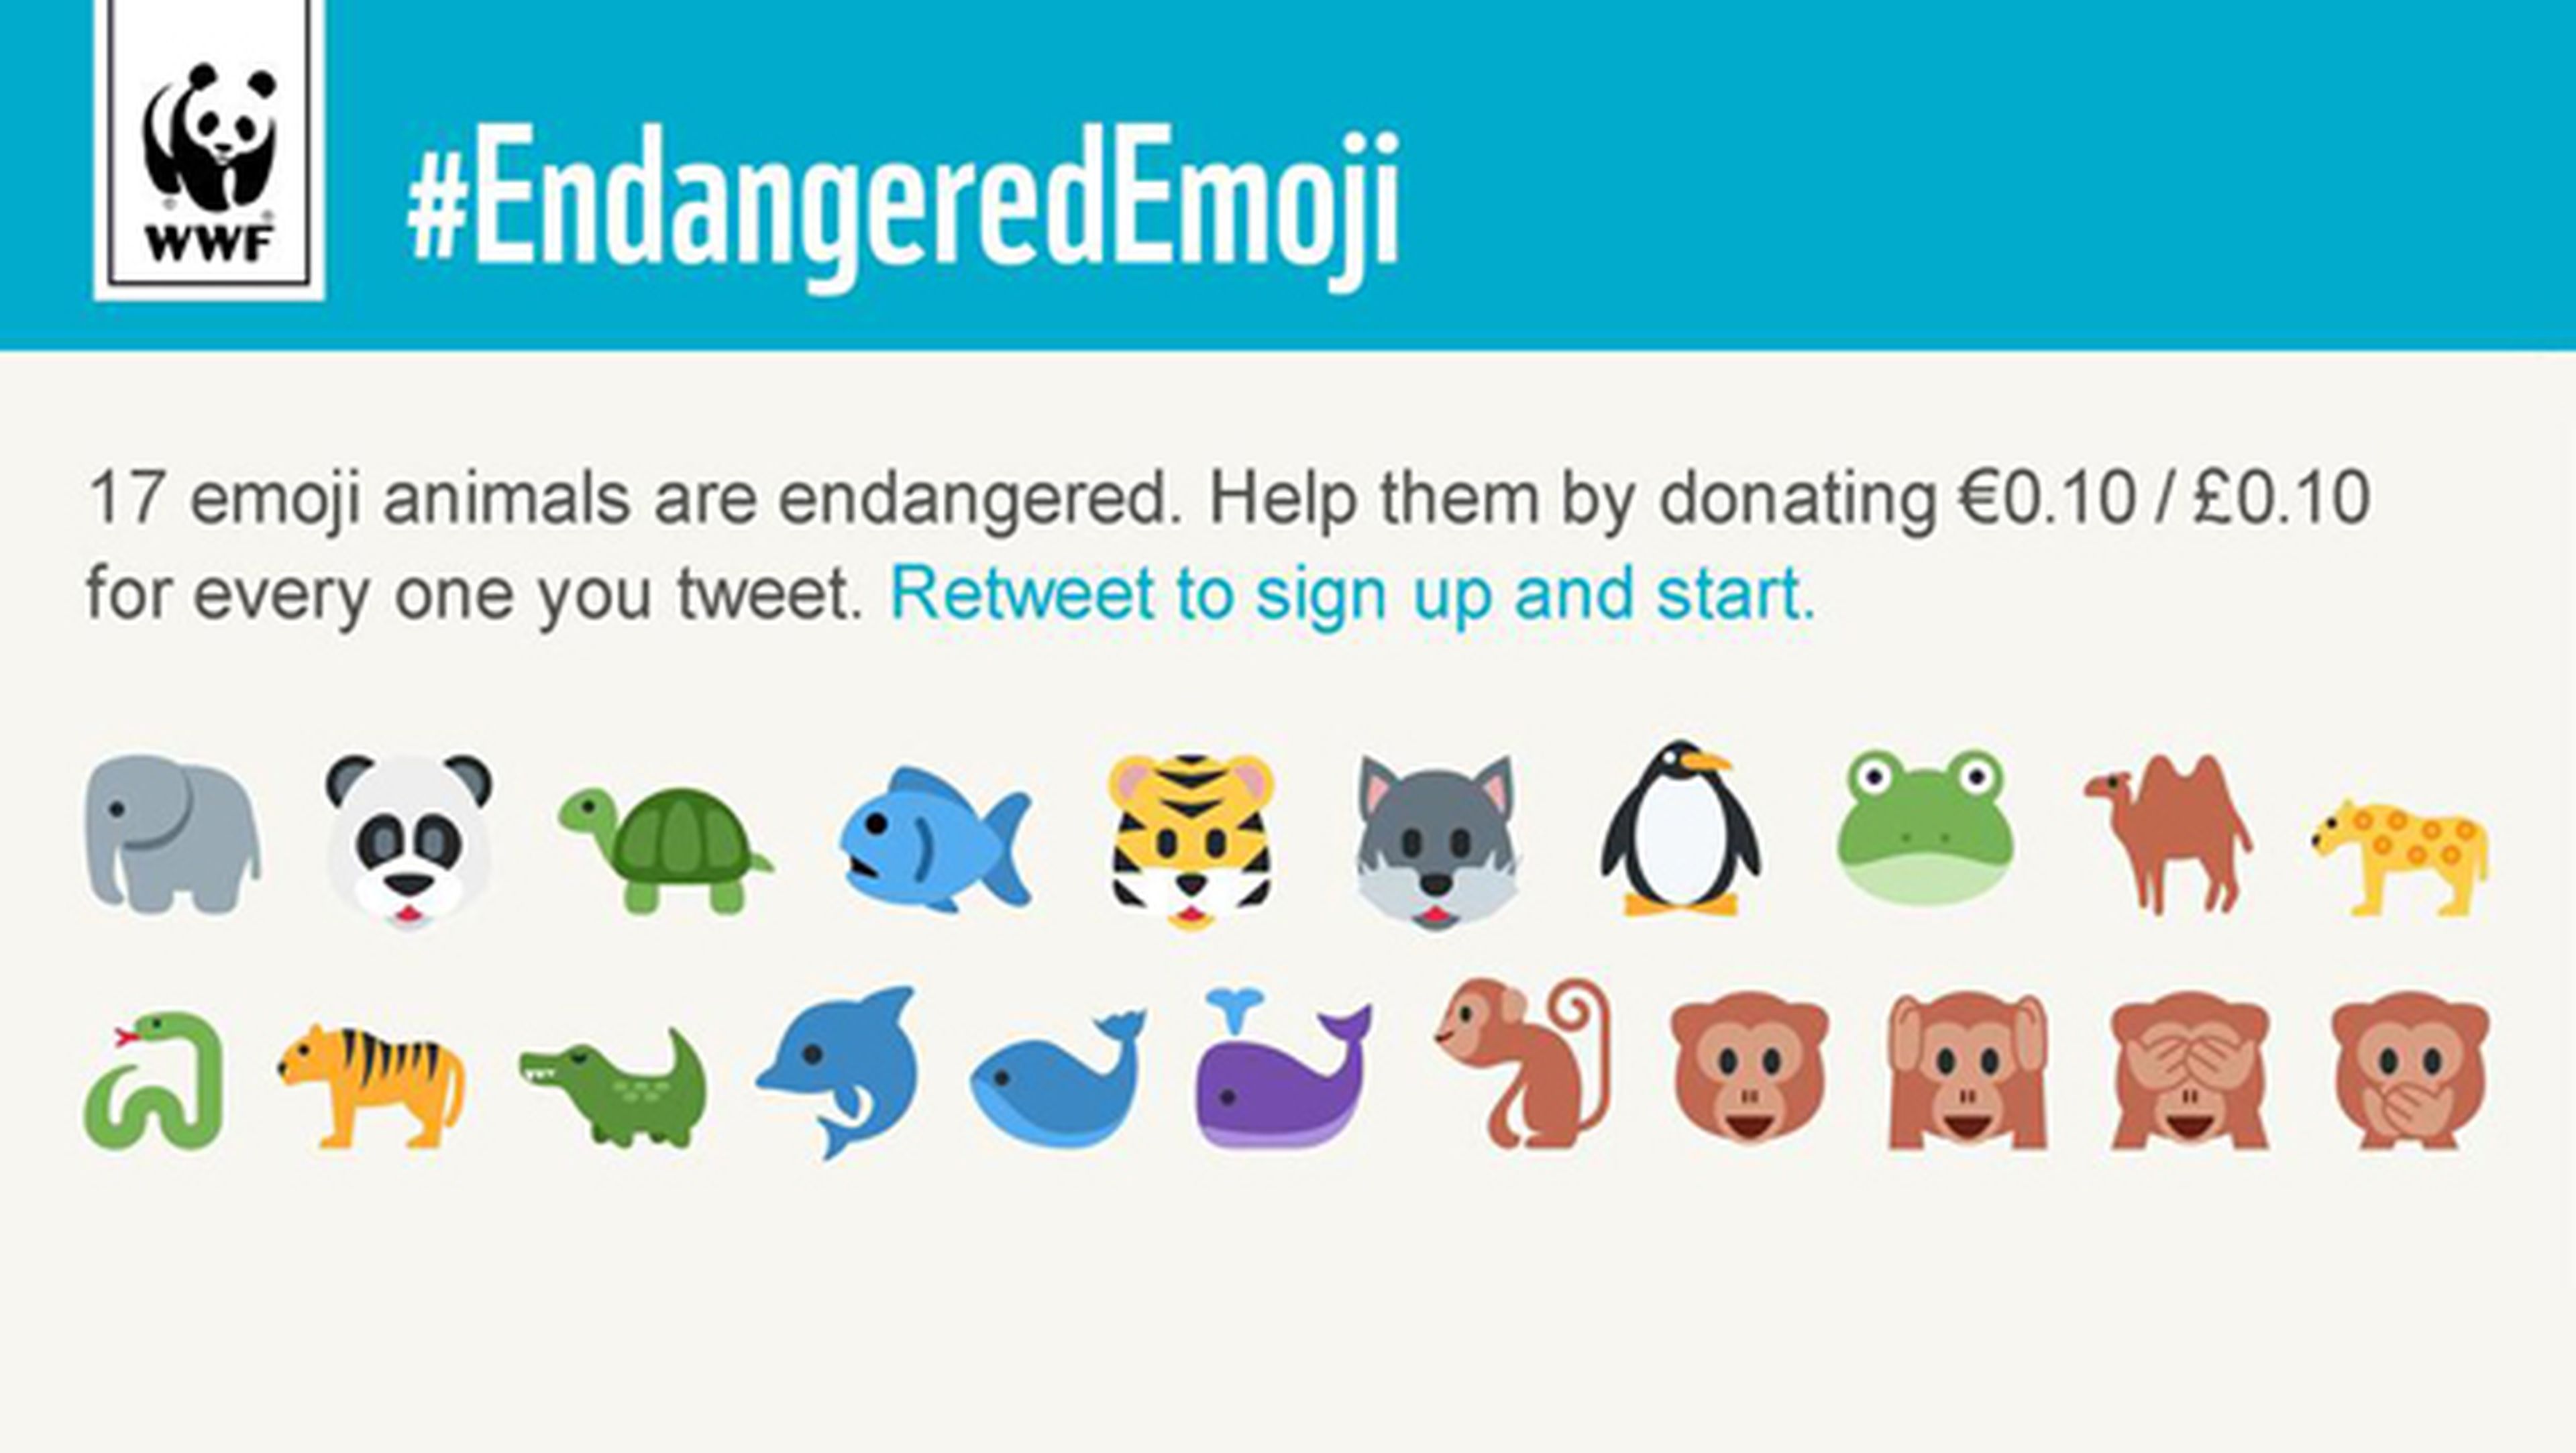 WWF lanza una campaña para salvar animales utilizando emojis